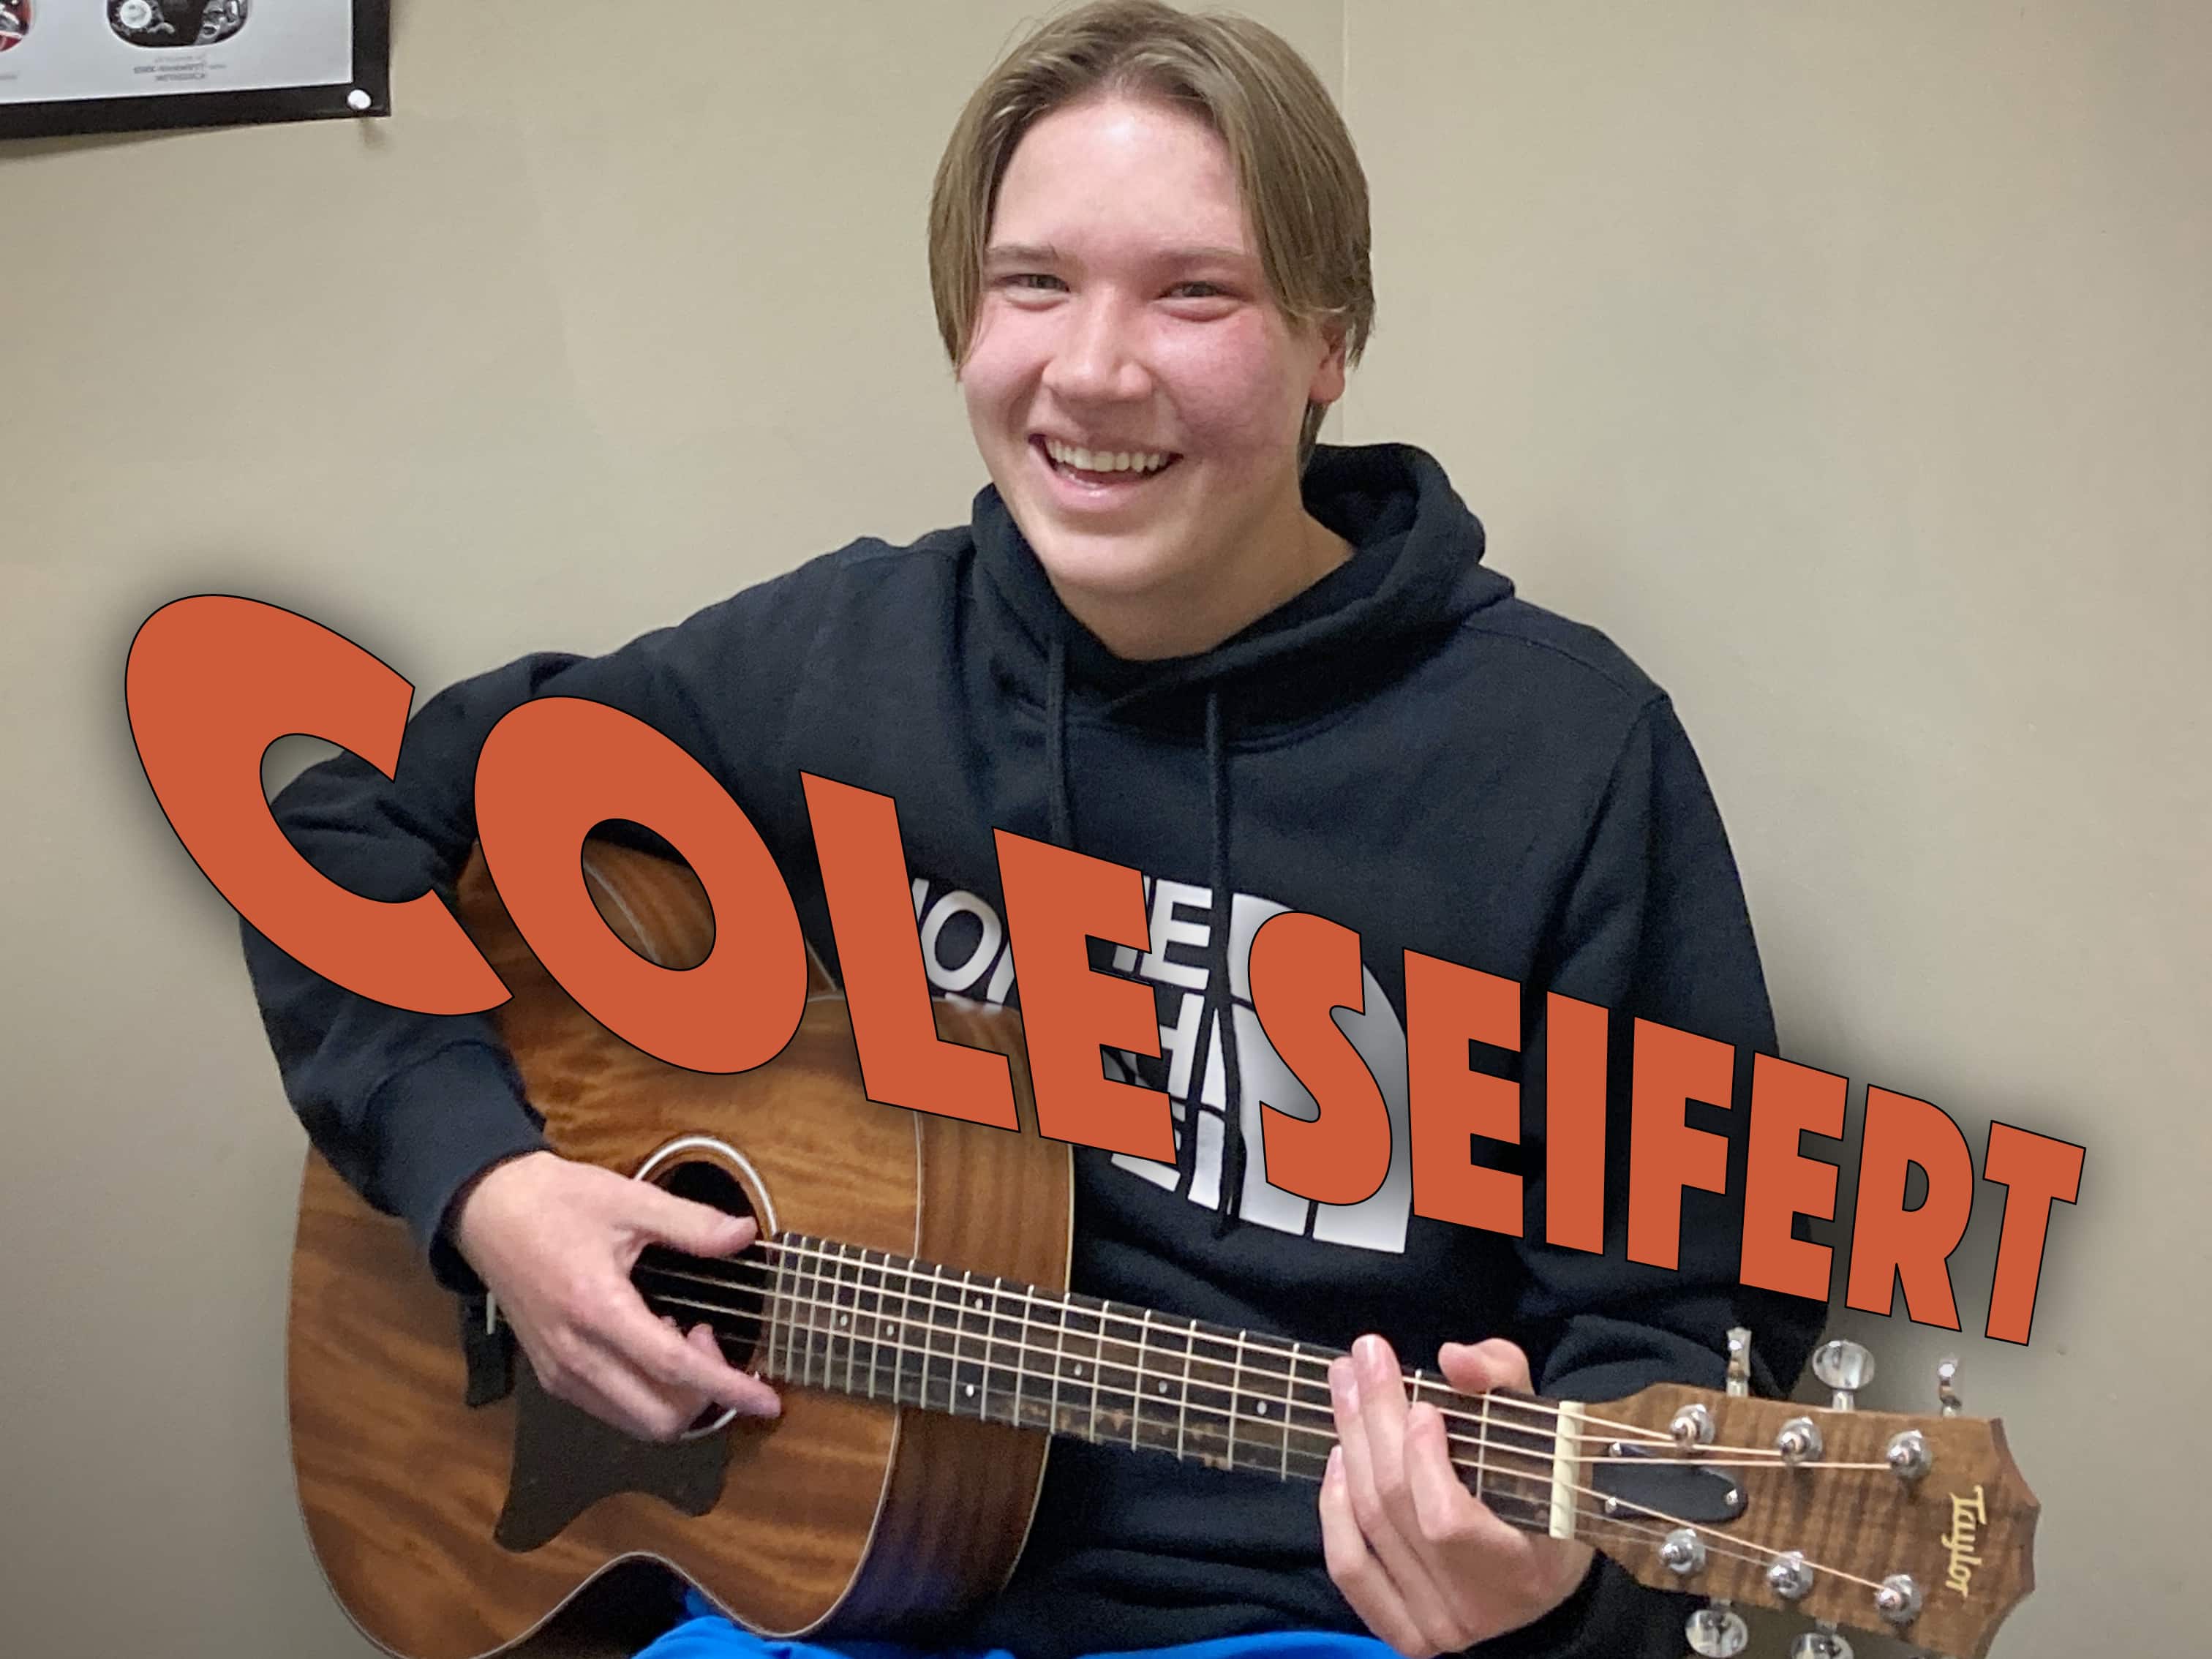 Guitar student Cole Seifert